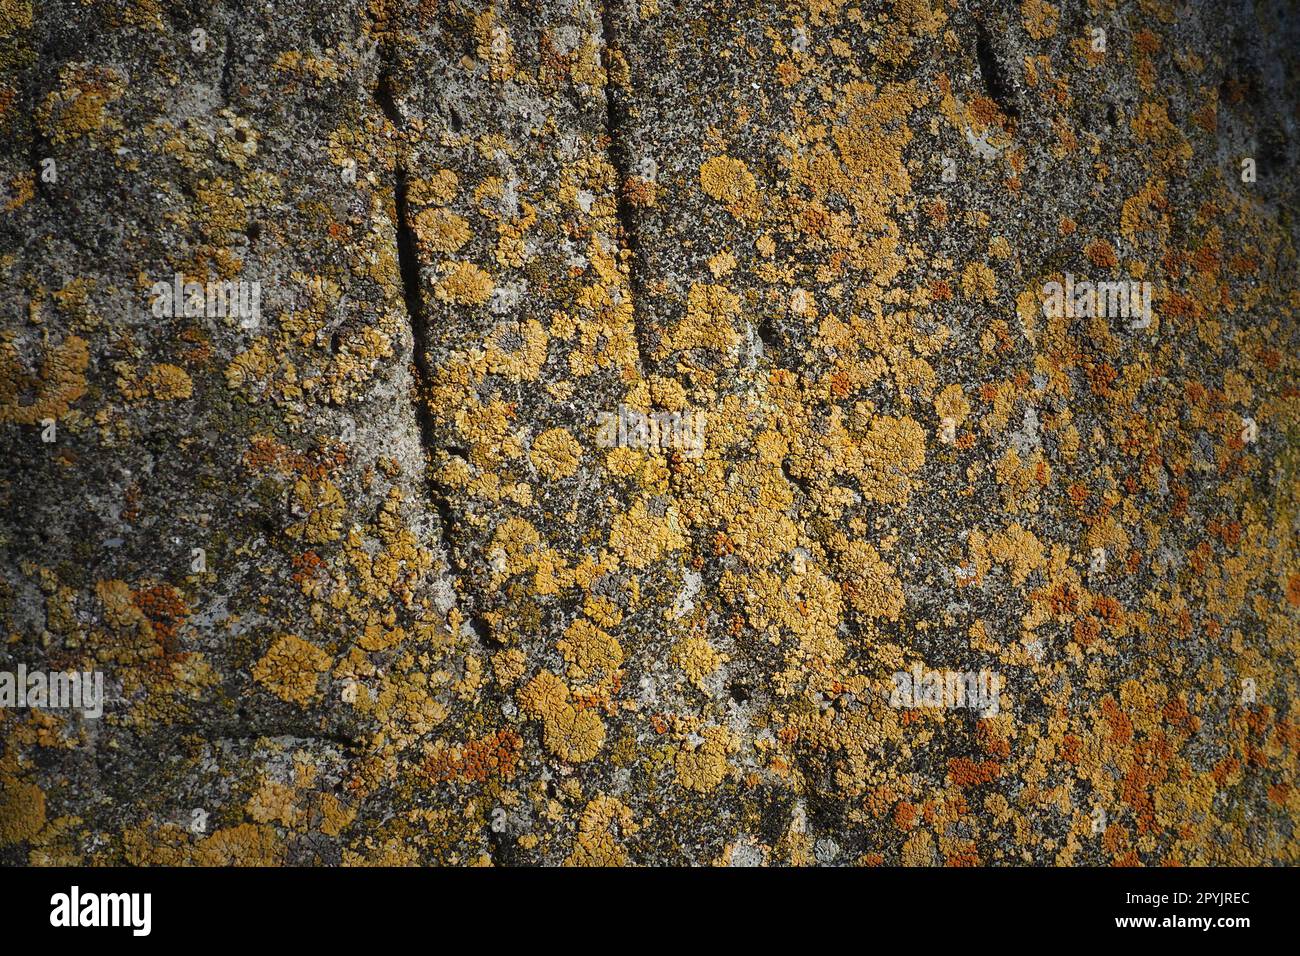 Il lichene rosso arancio giallo marrone copre la superficie della corteccia di un noce, da vicino. La consistenza della corteccia e della crescita. Simbiosi naturale e parassitismo. Ecobioma e ecosistema forestale. Foto Stock